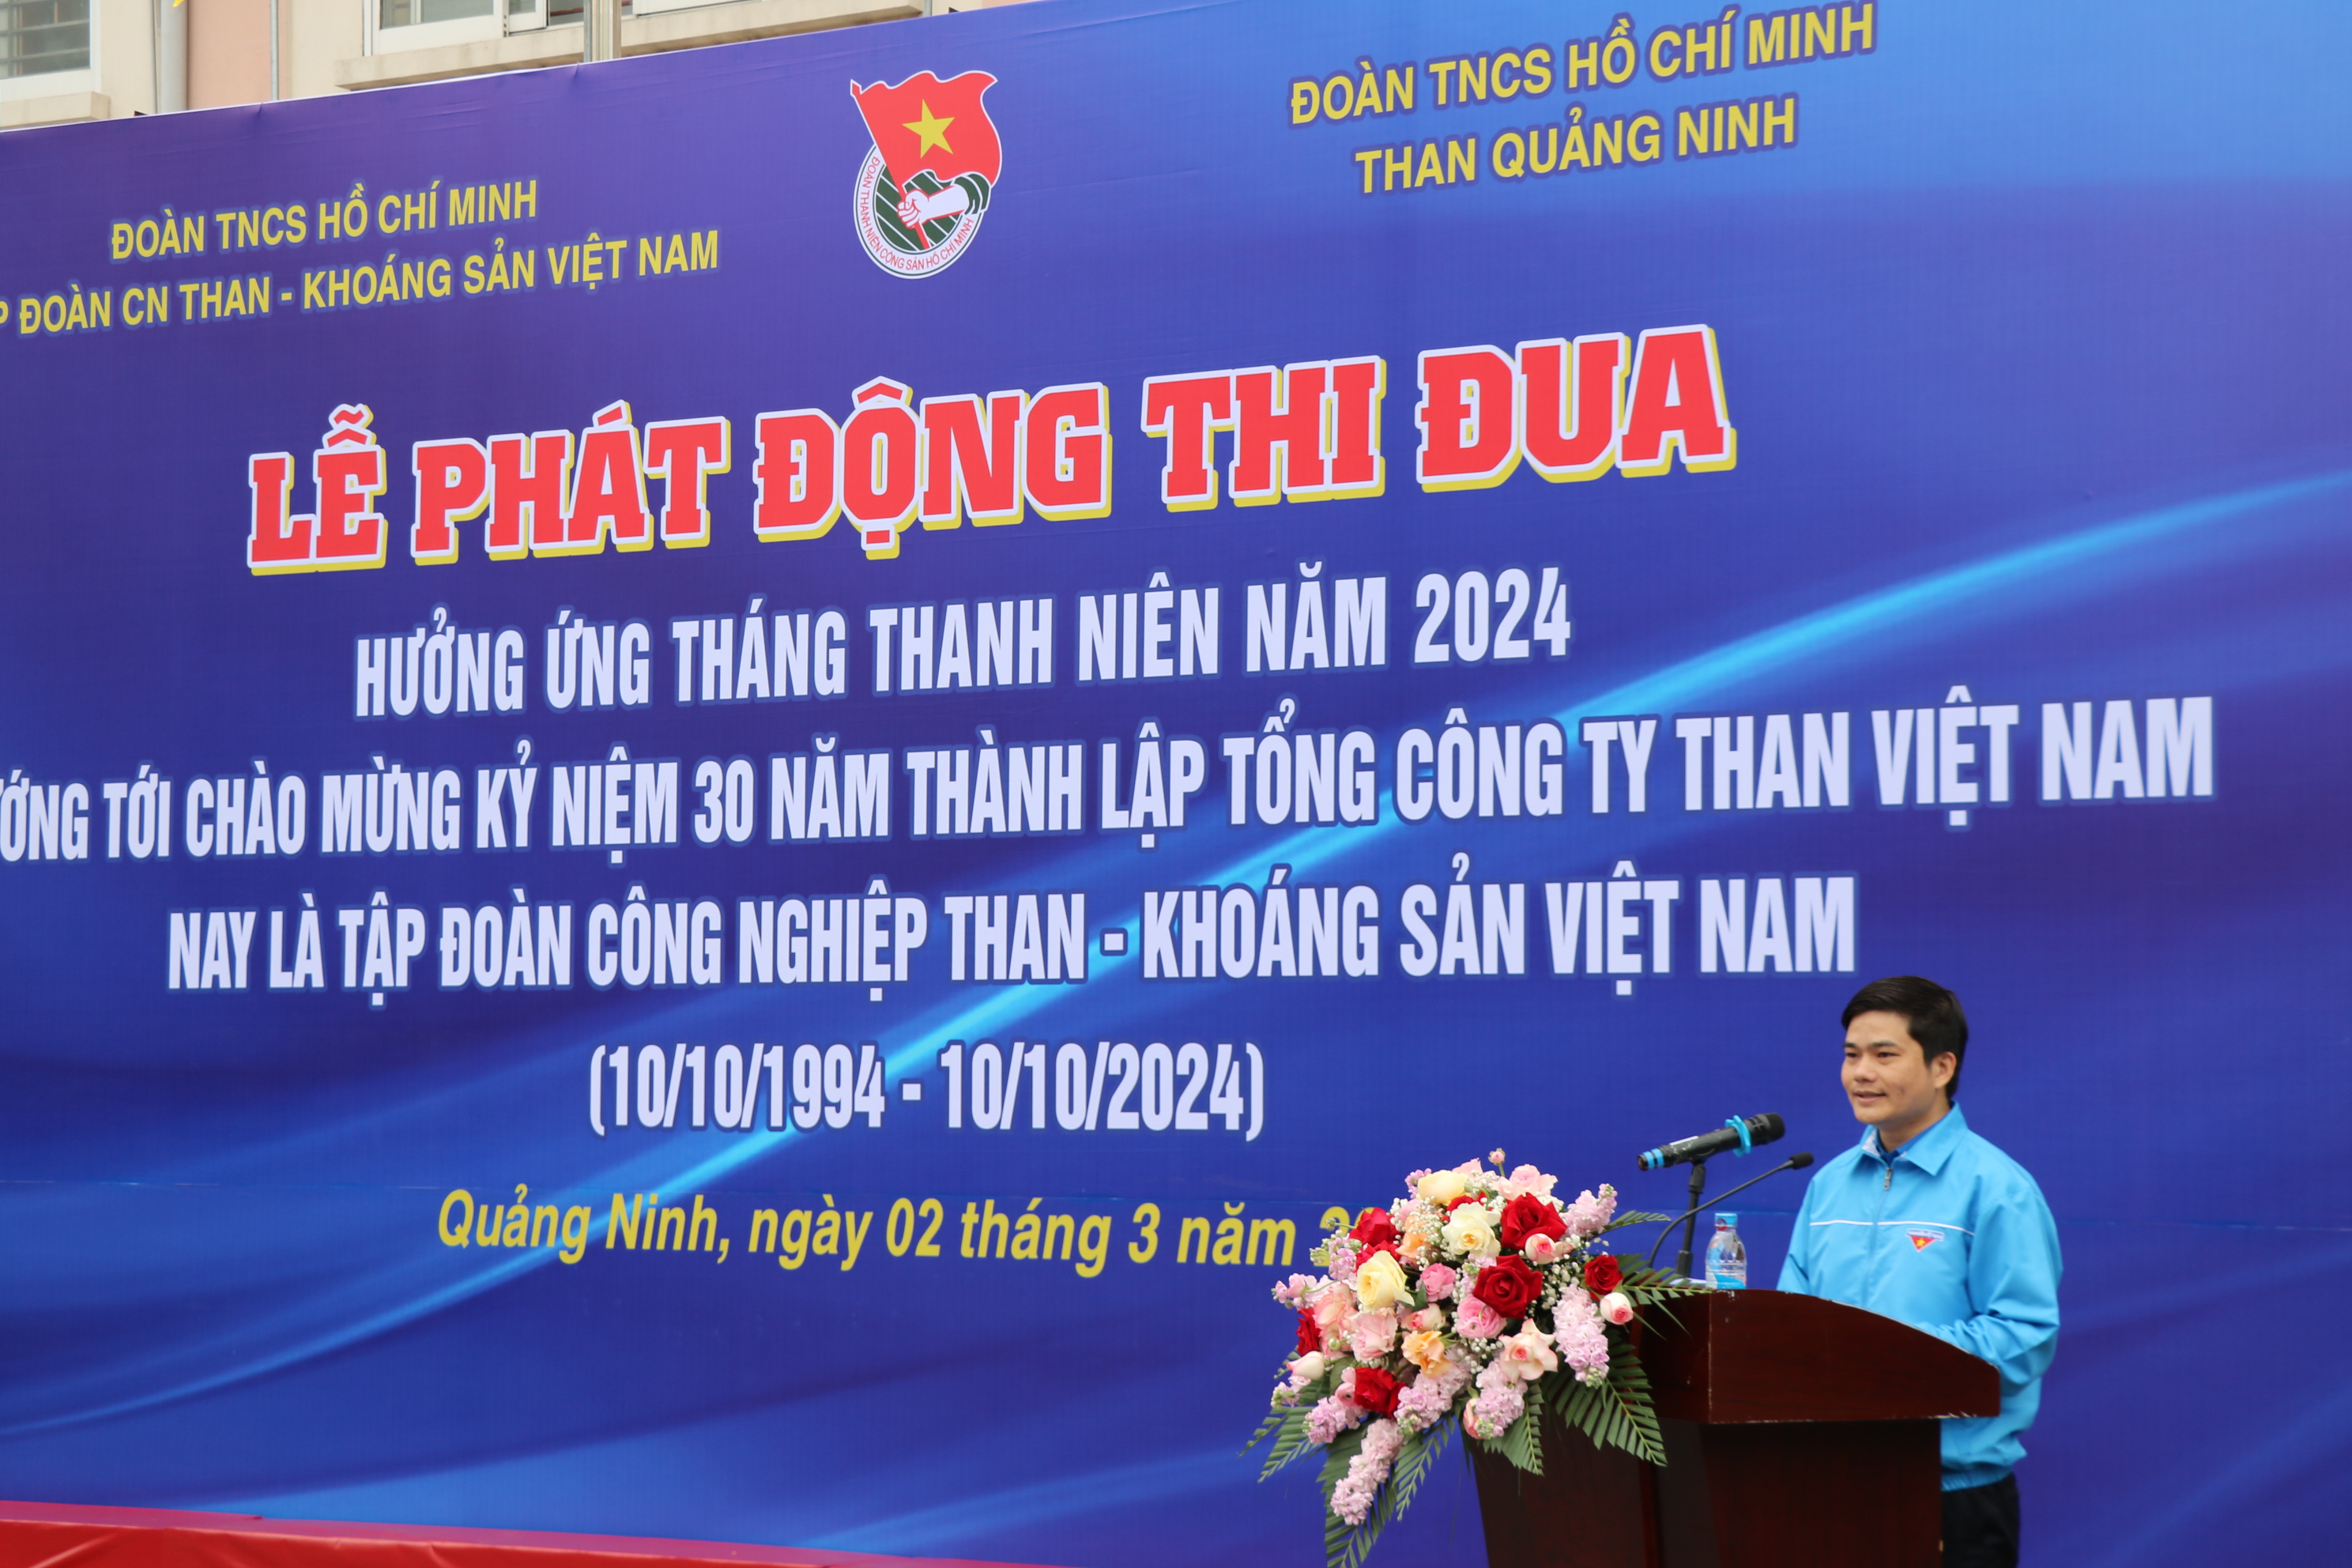 Đoàn thanh niên Công ty tham gia phát động thi đua hưởng ứng Tháng Thanh niên năm 2024, hướng tới chào mừng kỷ niệm 30 năm thành lập Tổng Công ty Than Việt Nam - Ảnh 3